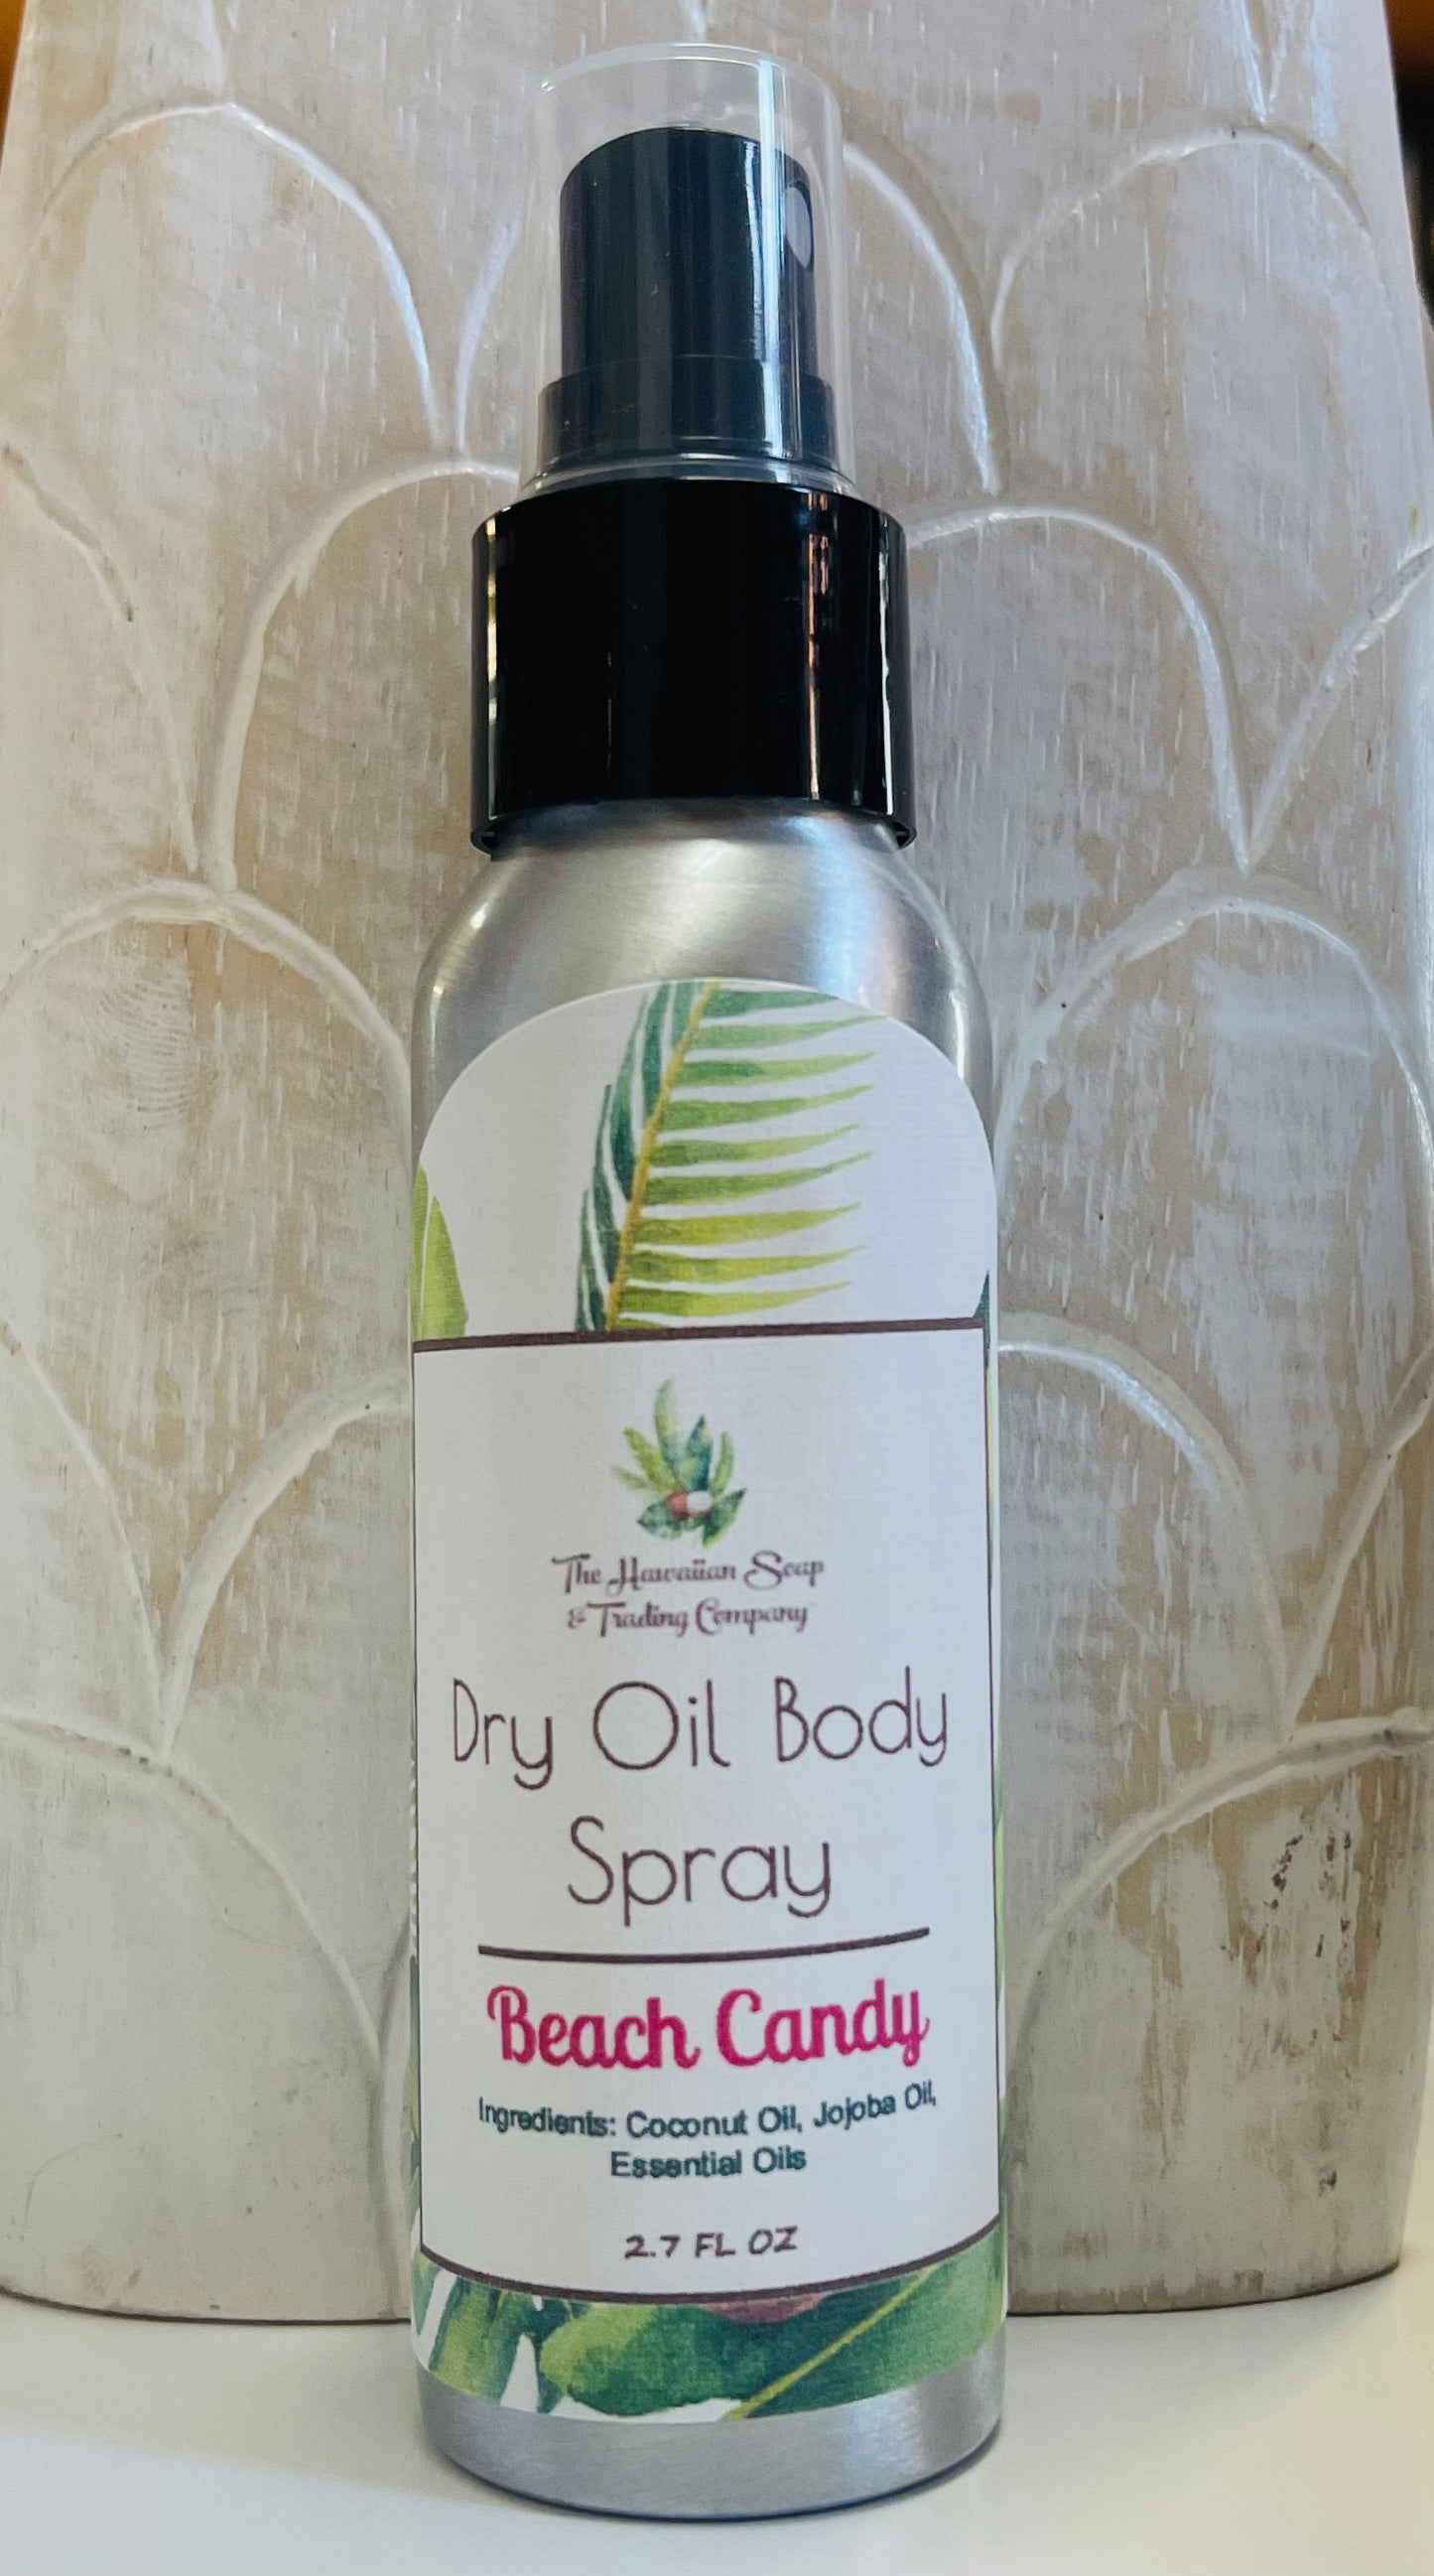 Dry Oil Body Spray